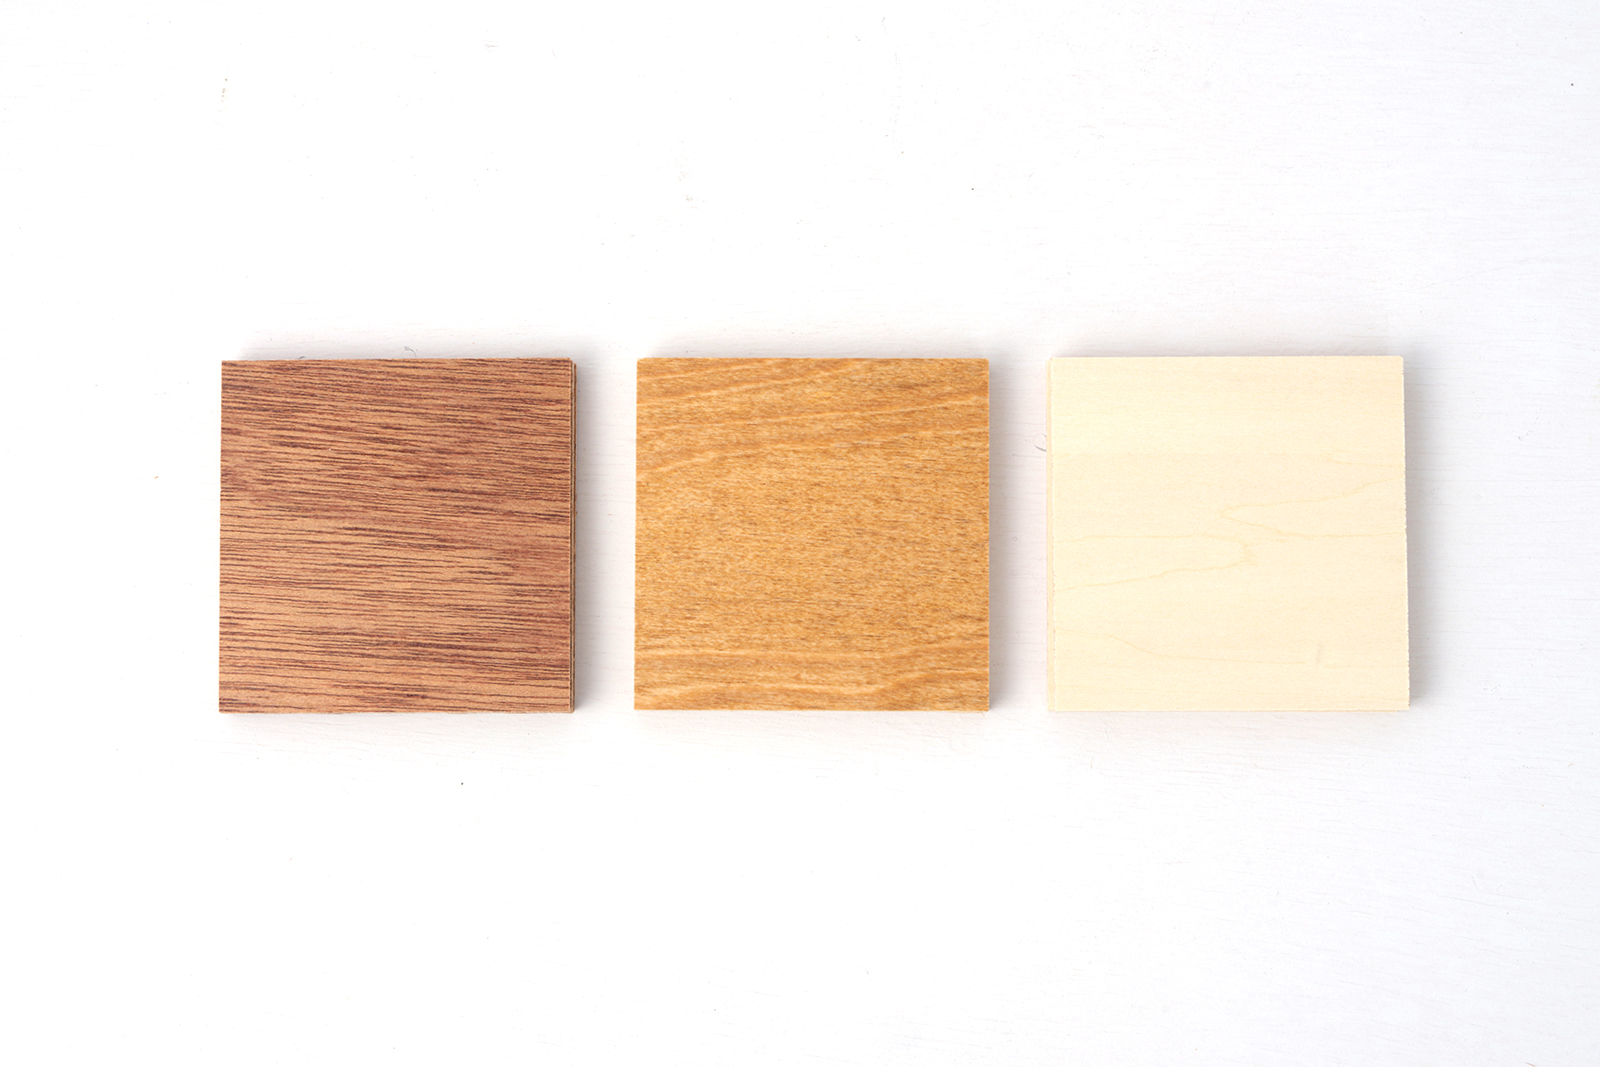 木製ミニマルキッチン ラワン W1800×D600 KB-KC016-17-G183 仕上げは3種類あります。左からラワン・バーチ・シナ。各商品ページをご確認ください